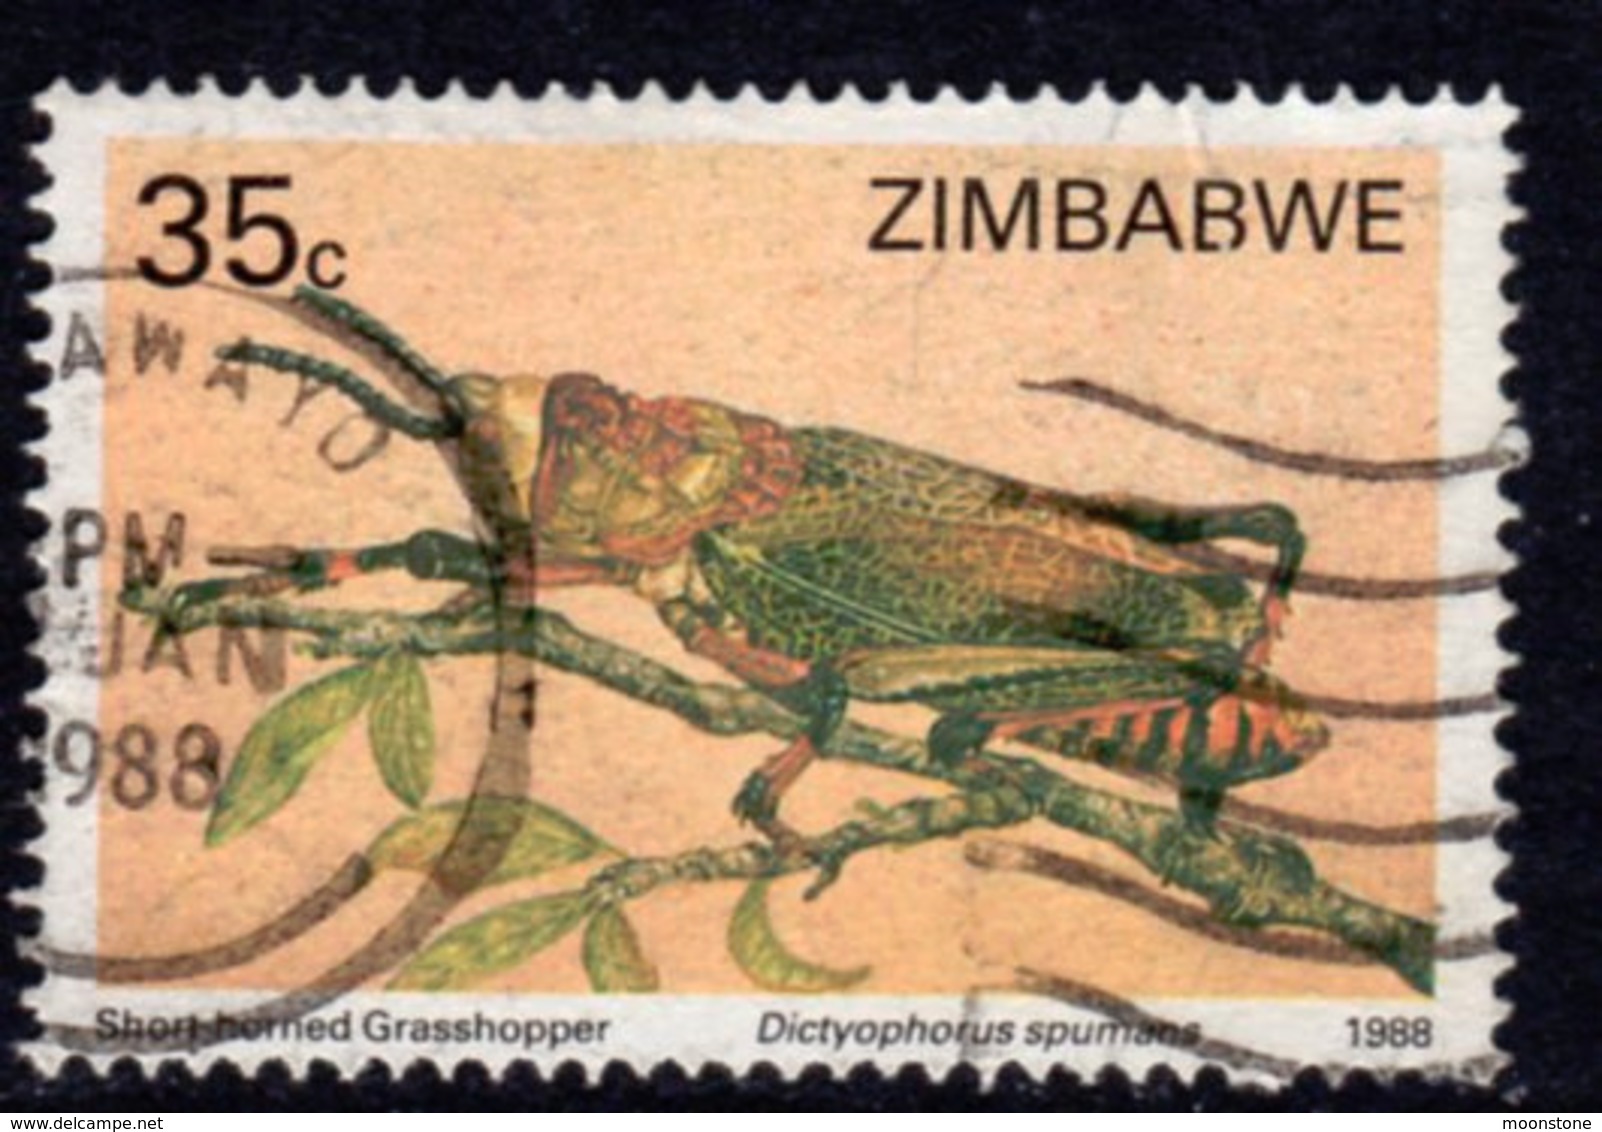 Zimbabwe 1988 Insects 35c Value, Used, SG 727 (BA2) - Zimbabwe (1980-...)